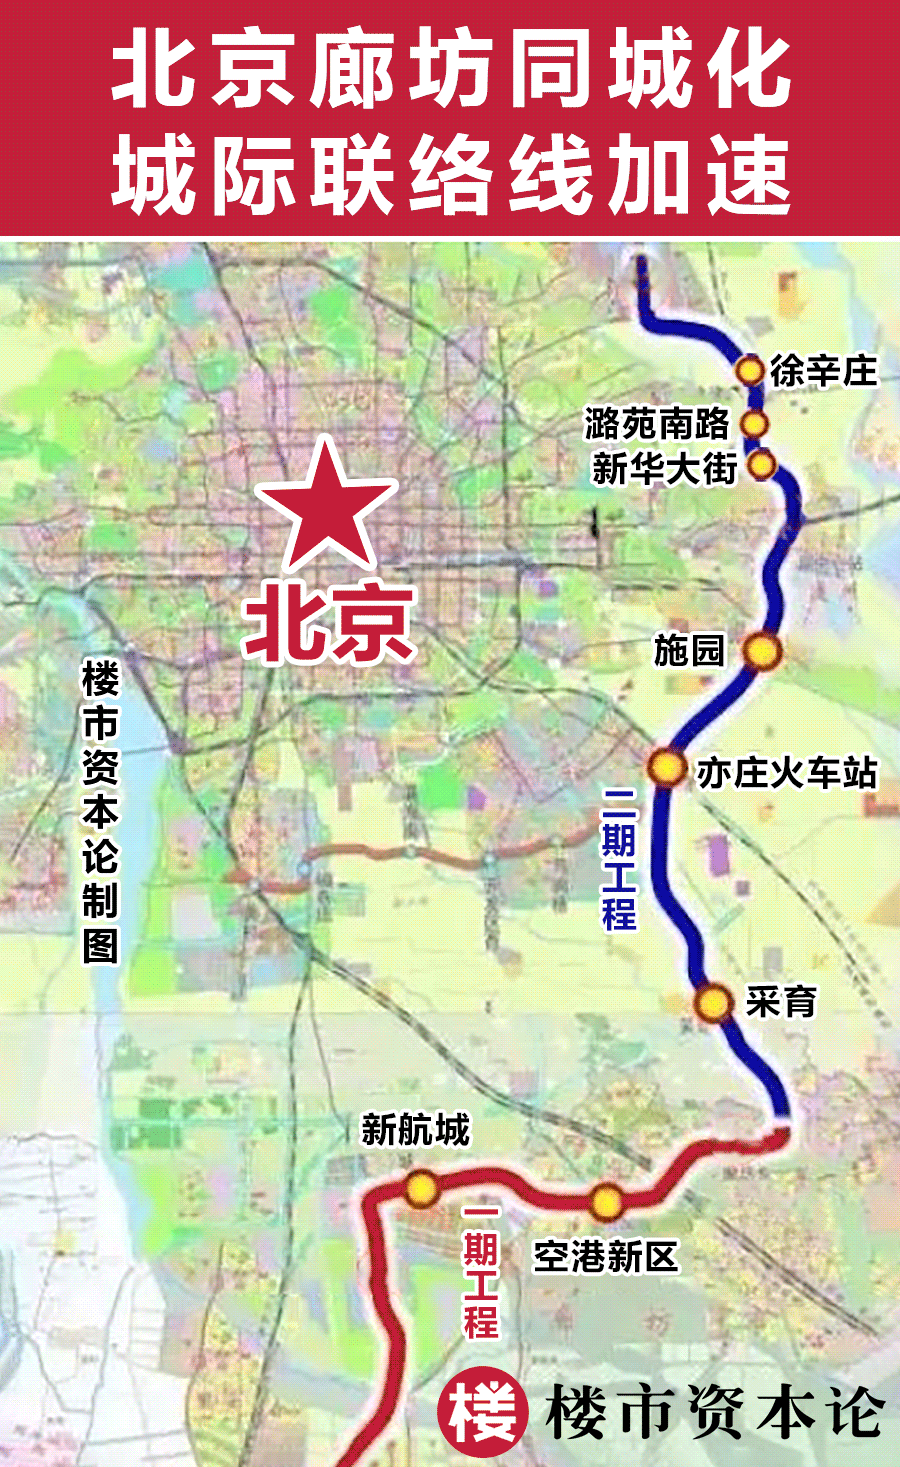 3月28日,新建城际铁路联络线(以下简称联络线)廊坊段开工建设,预计